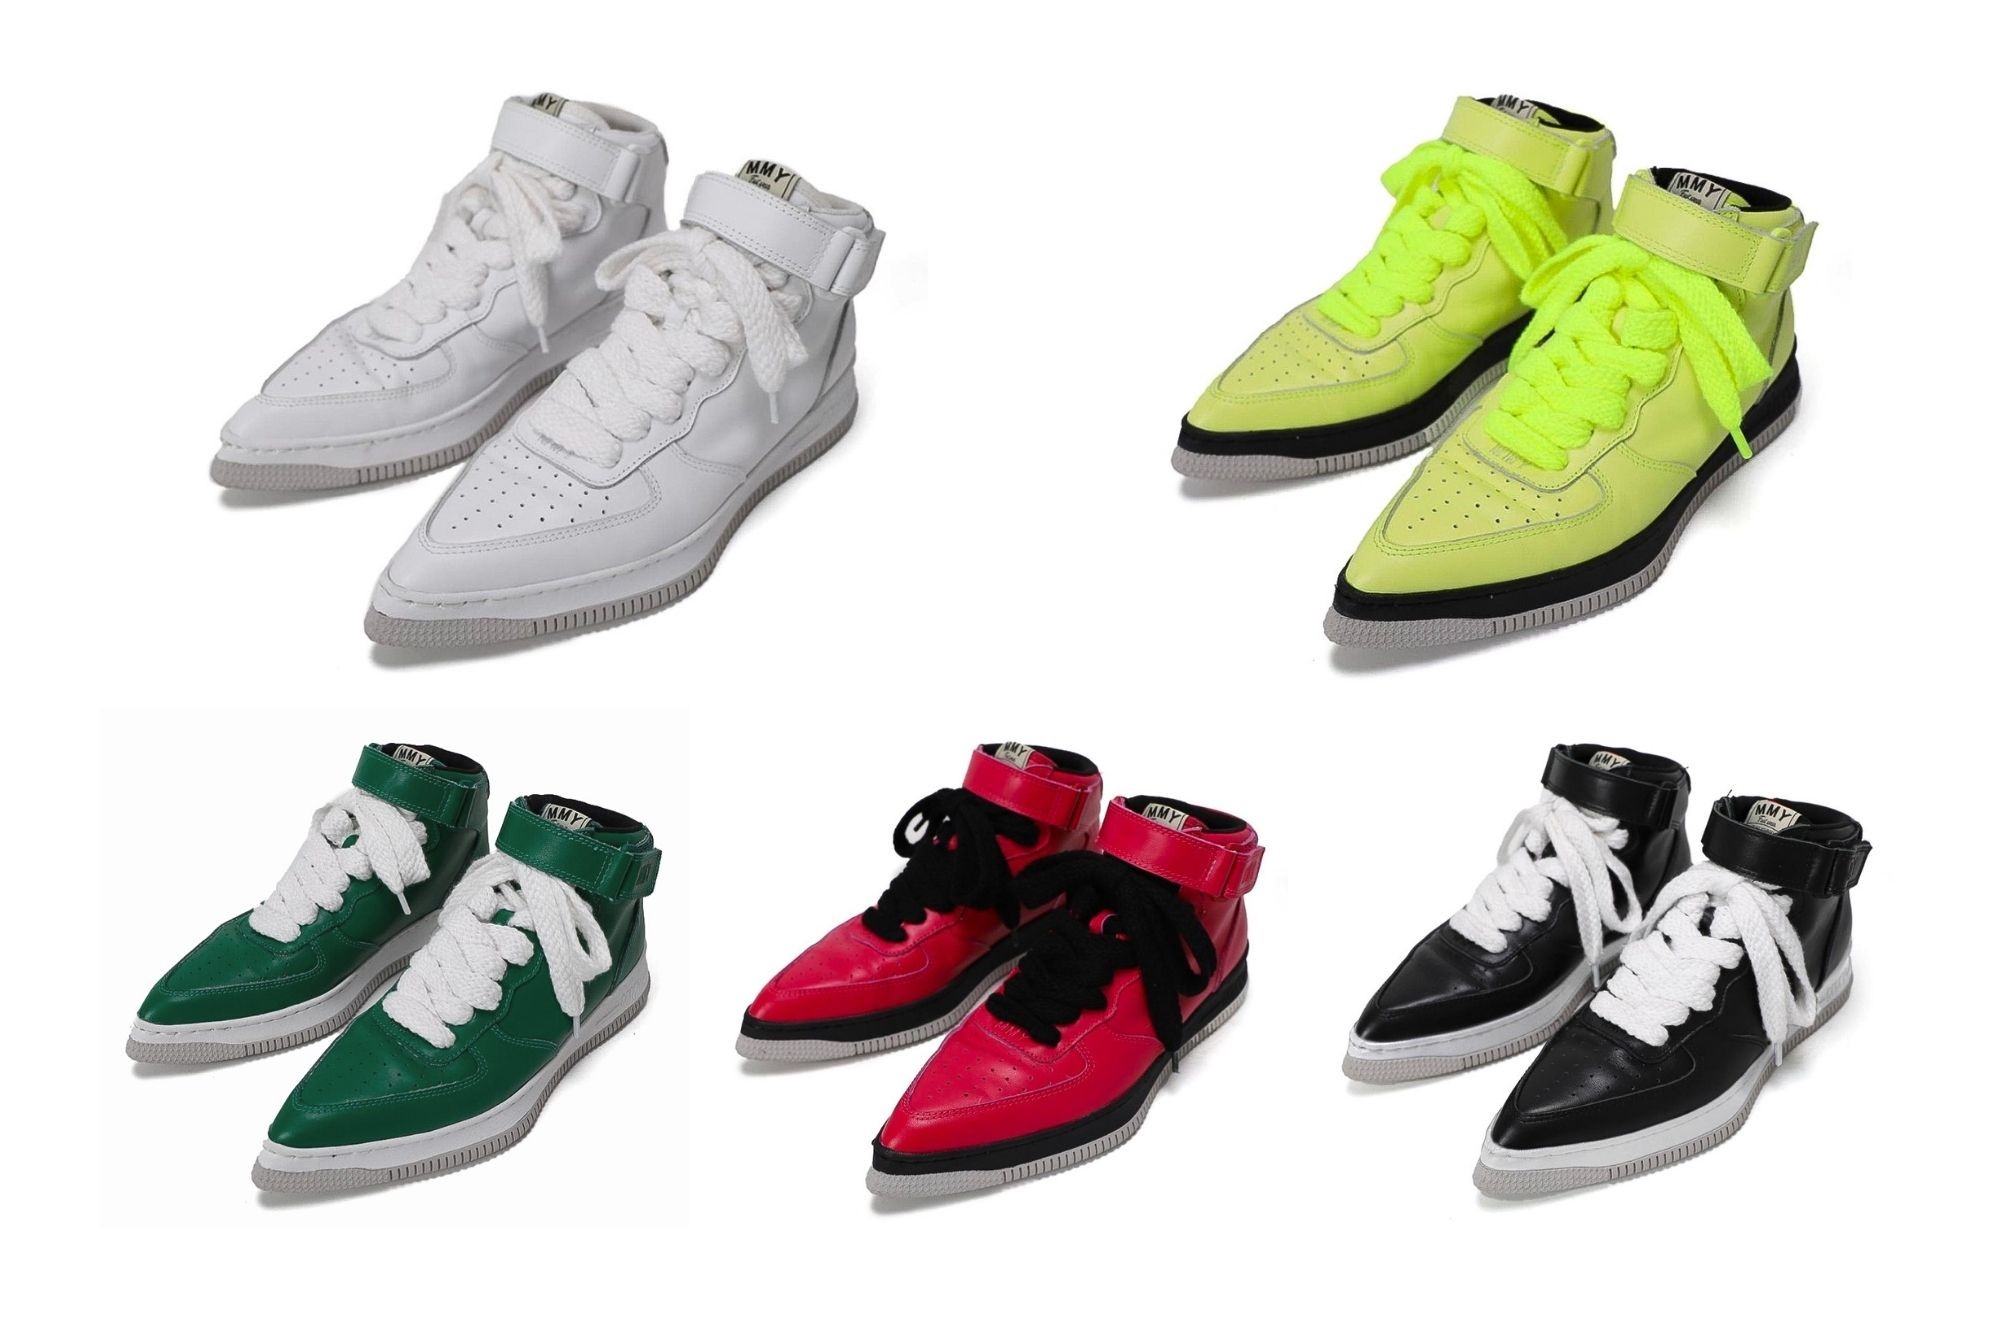 Bộ sưu tập giày mới của Nike gồm 5 màu